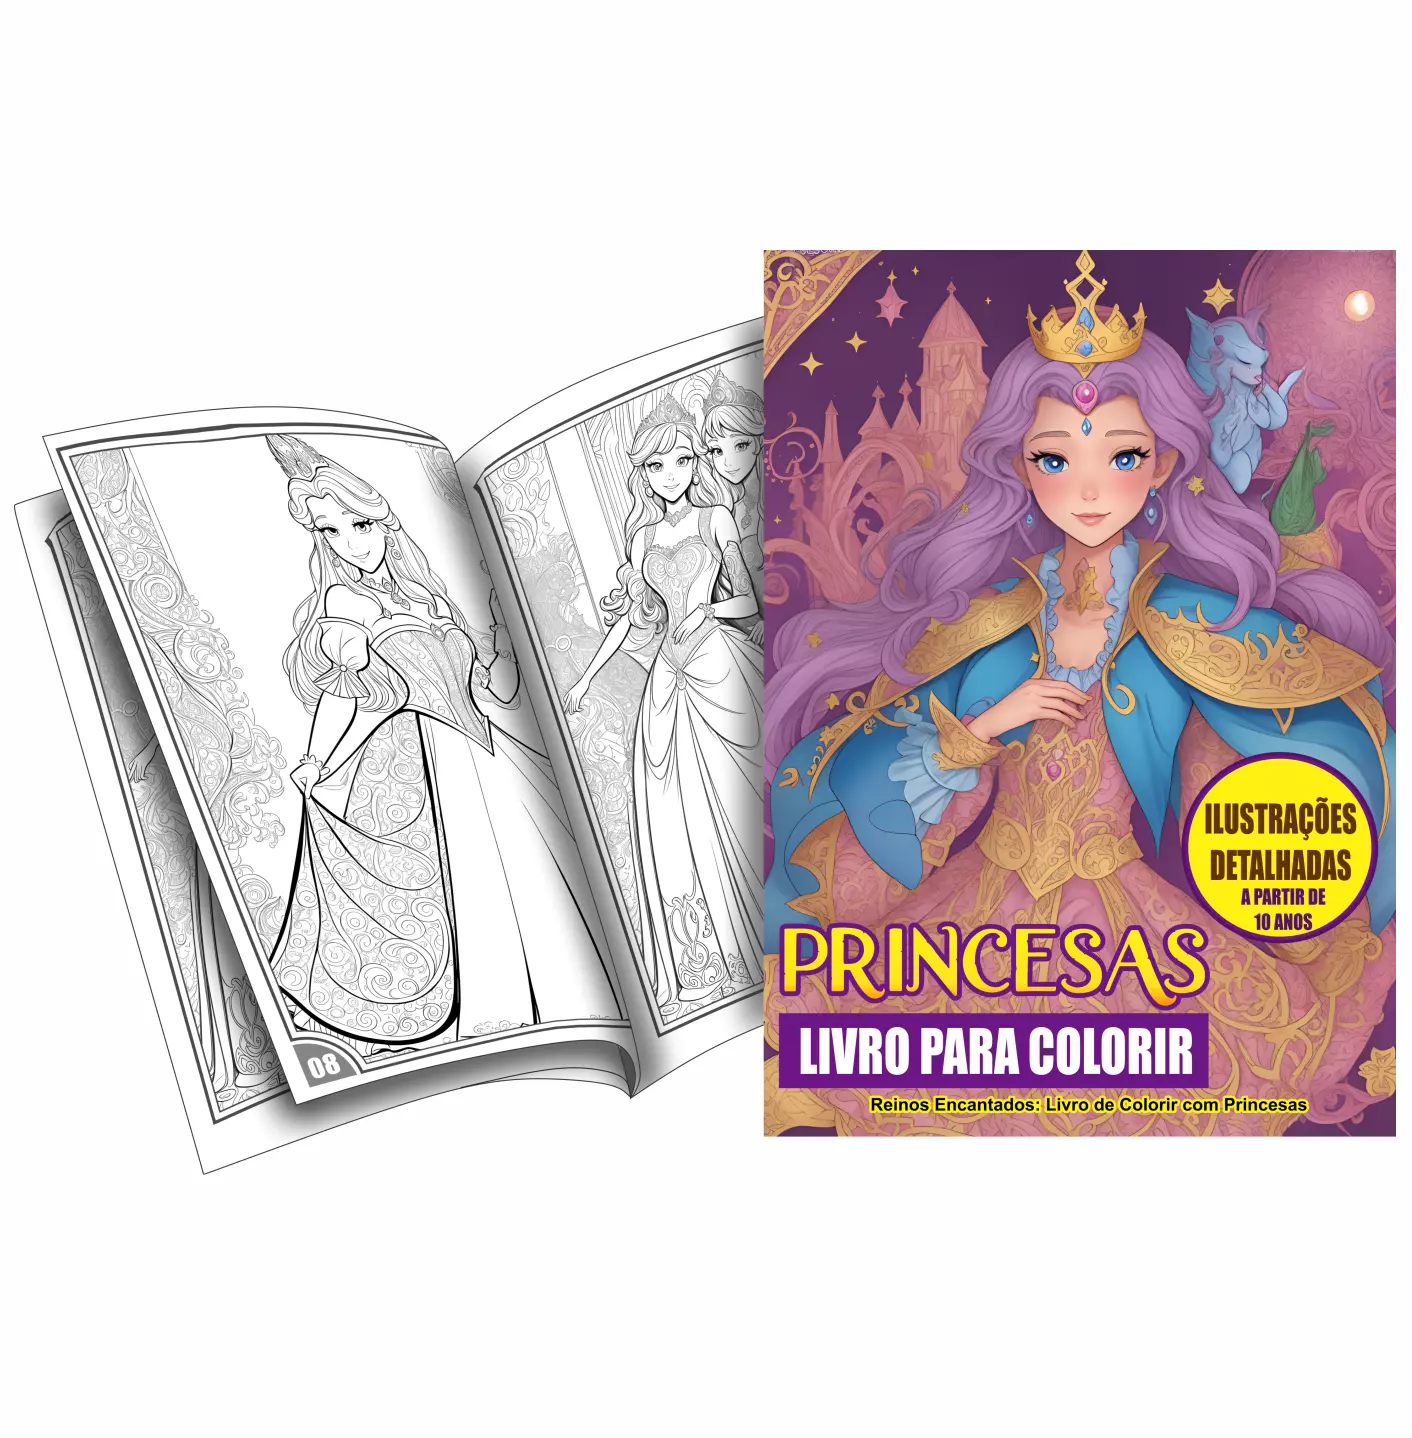 Princesas Livro para Pintar